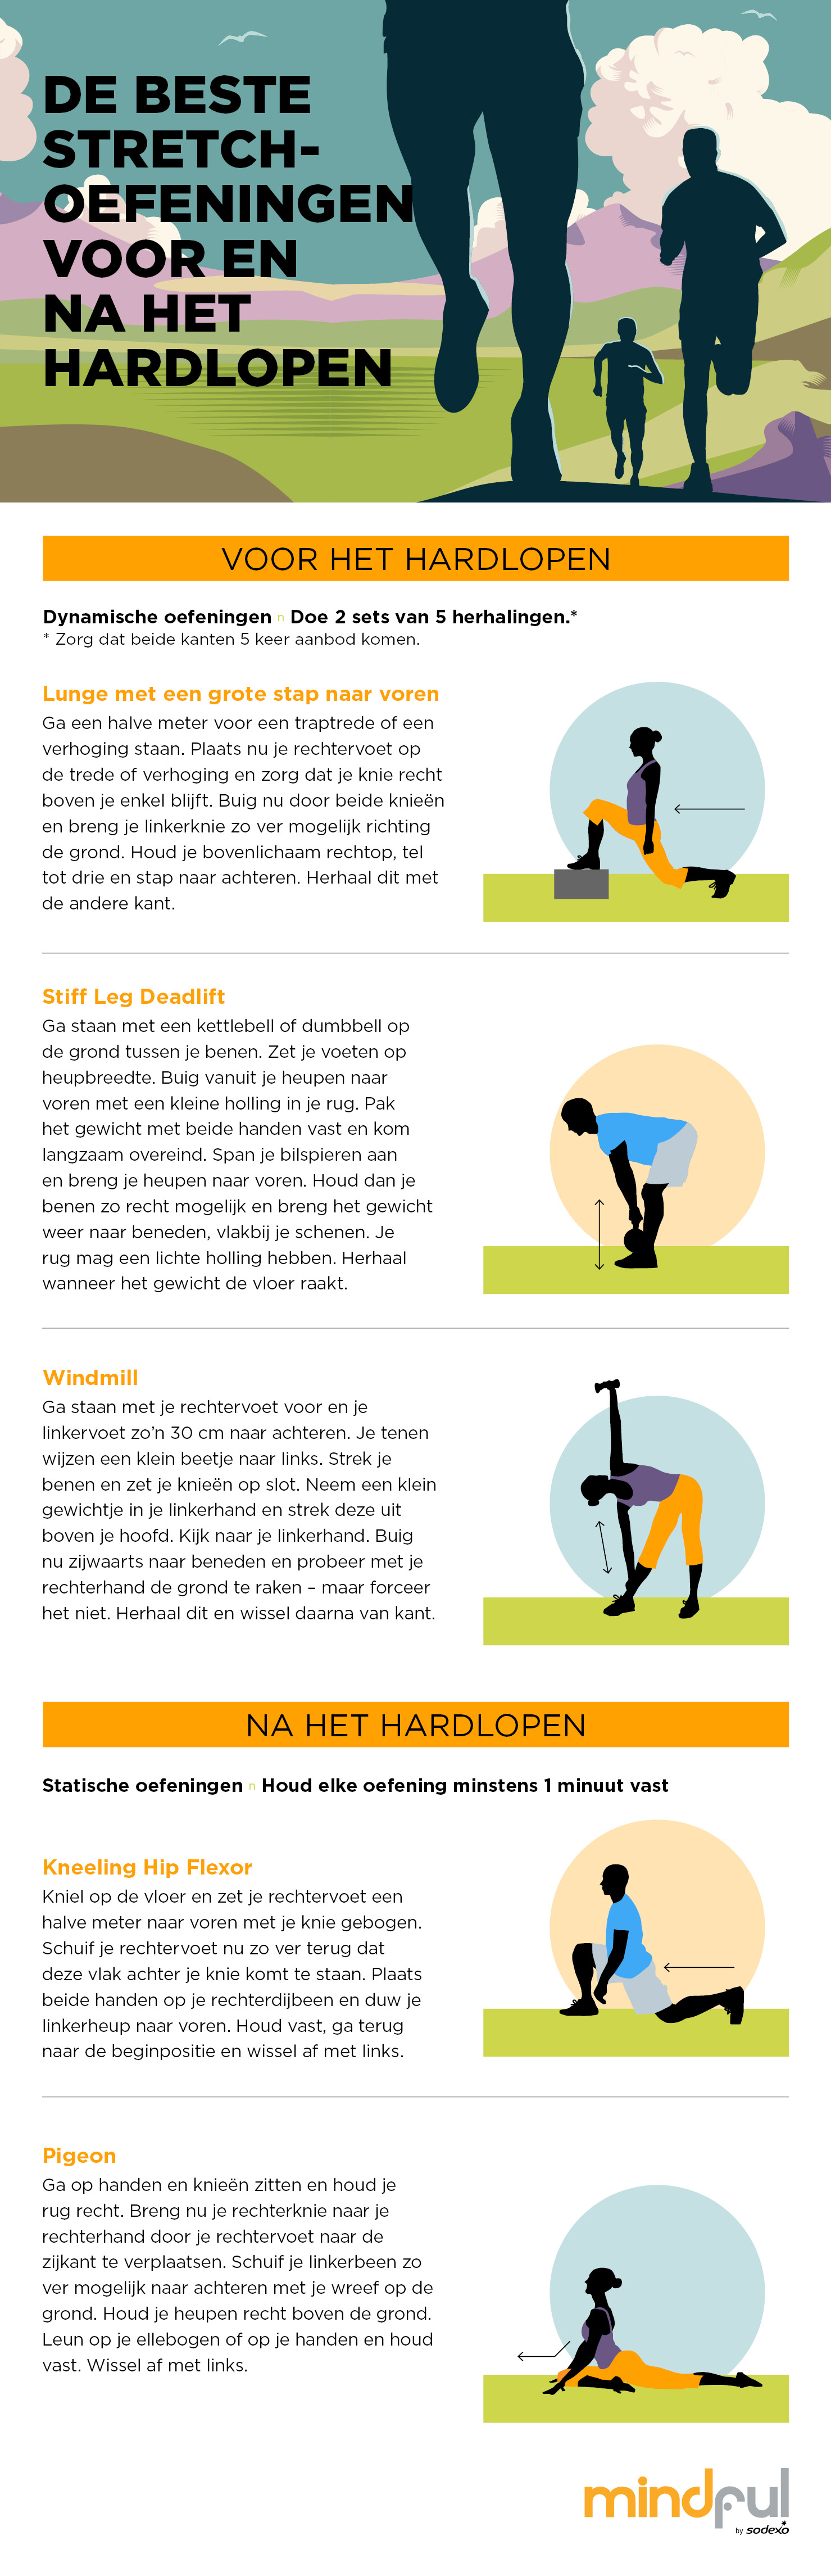 De beste stretch-oefeningen voor hardlopers Mindful by - Nederlands